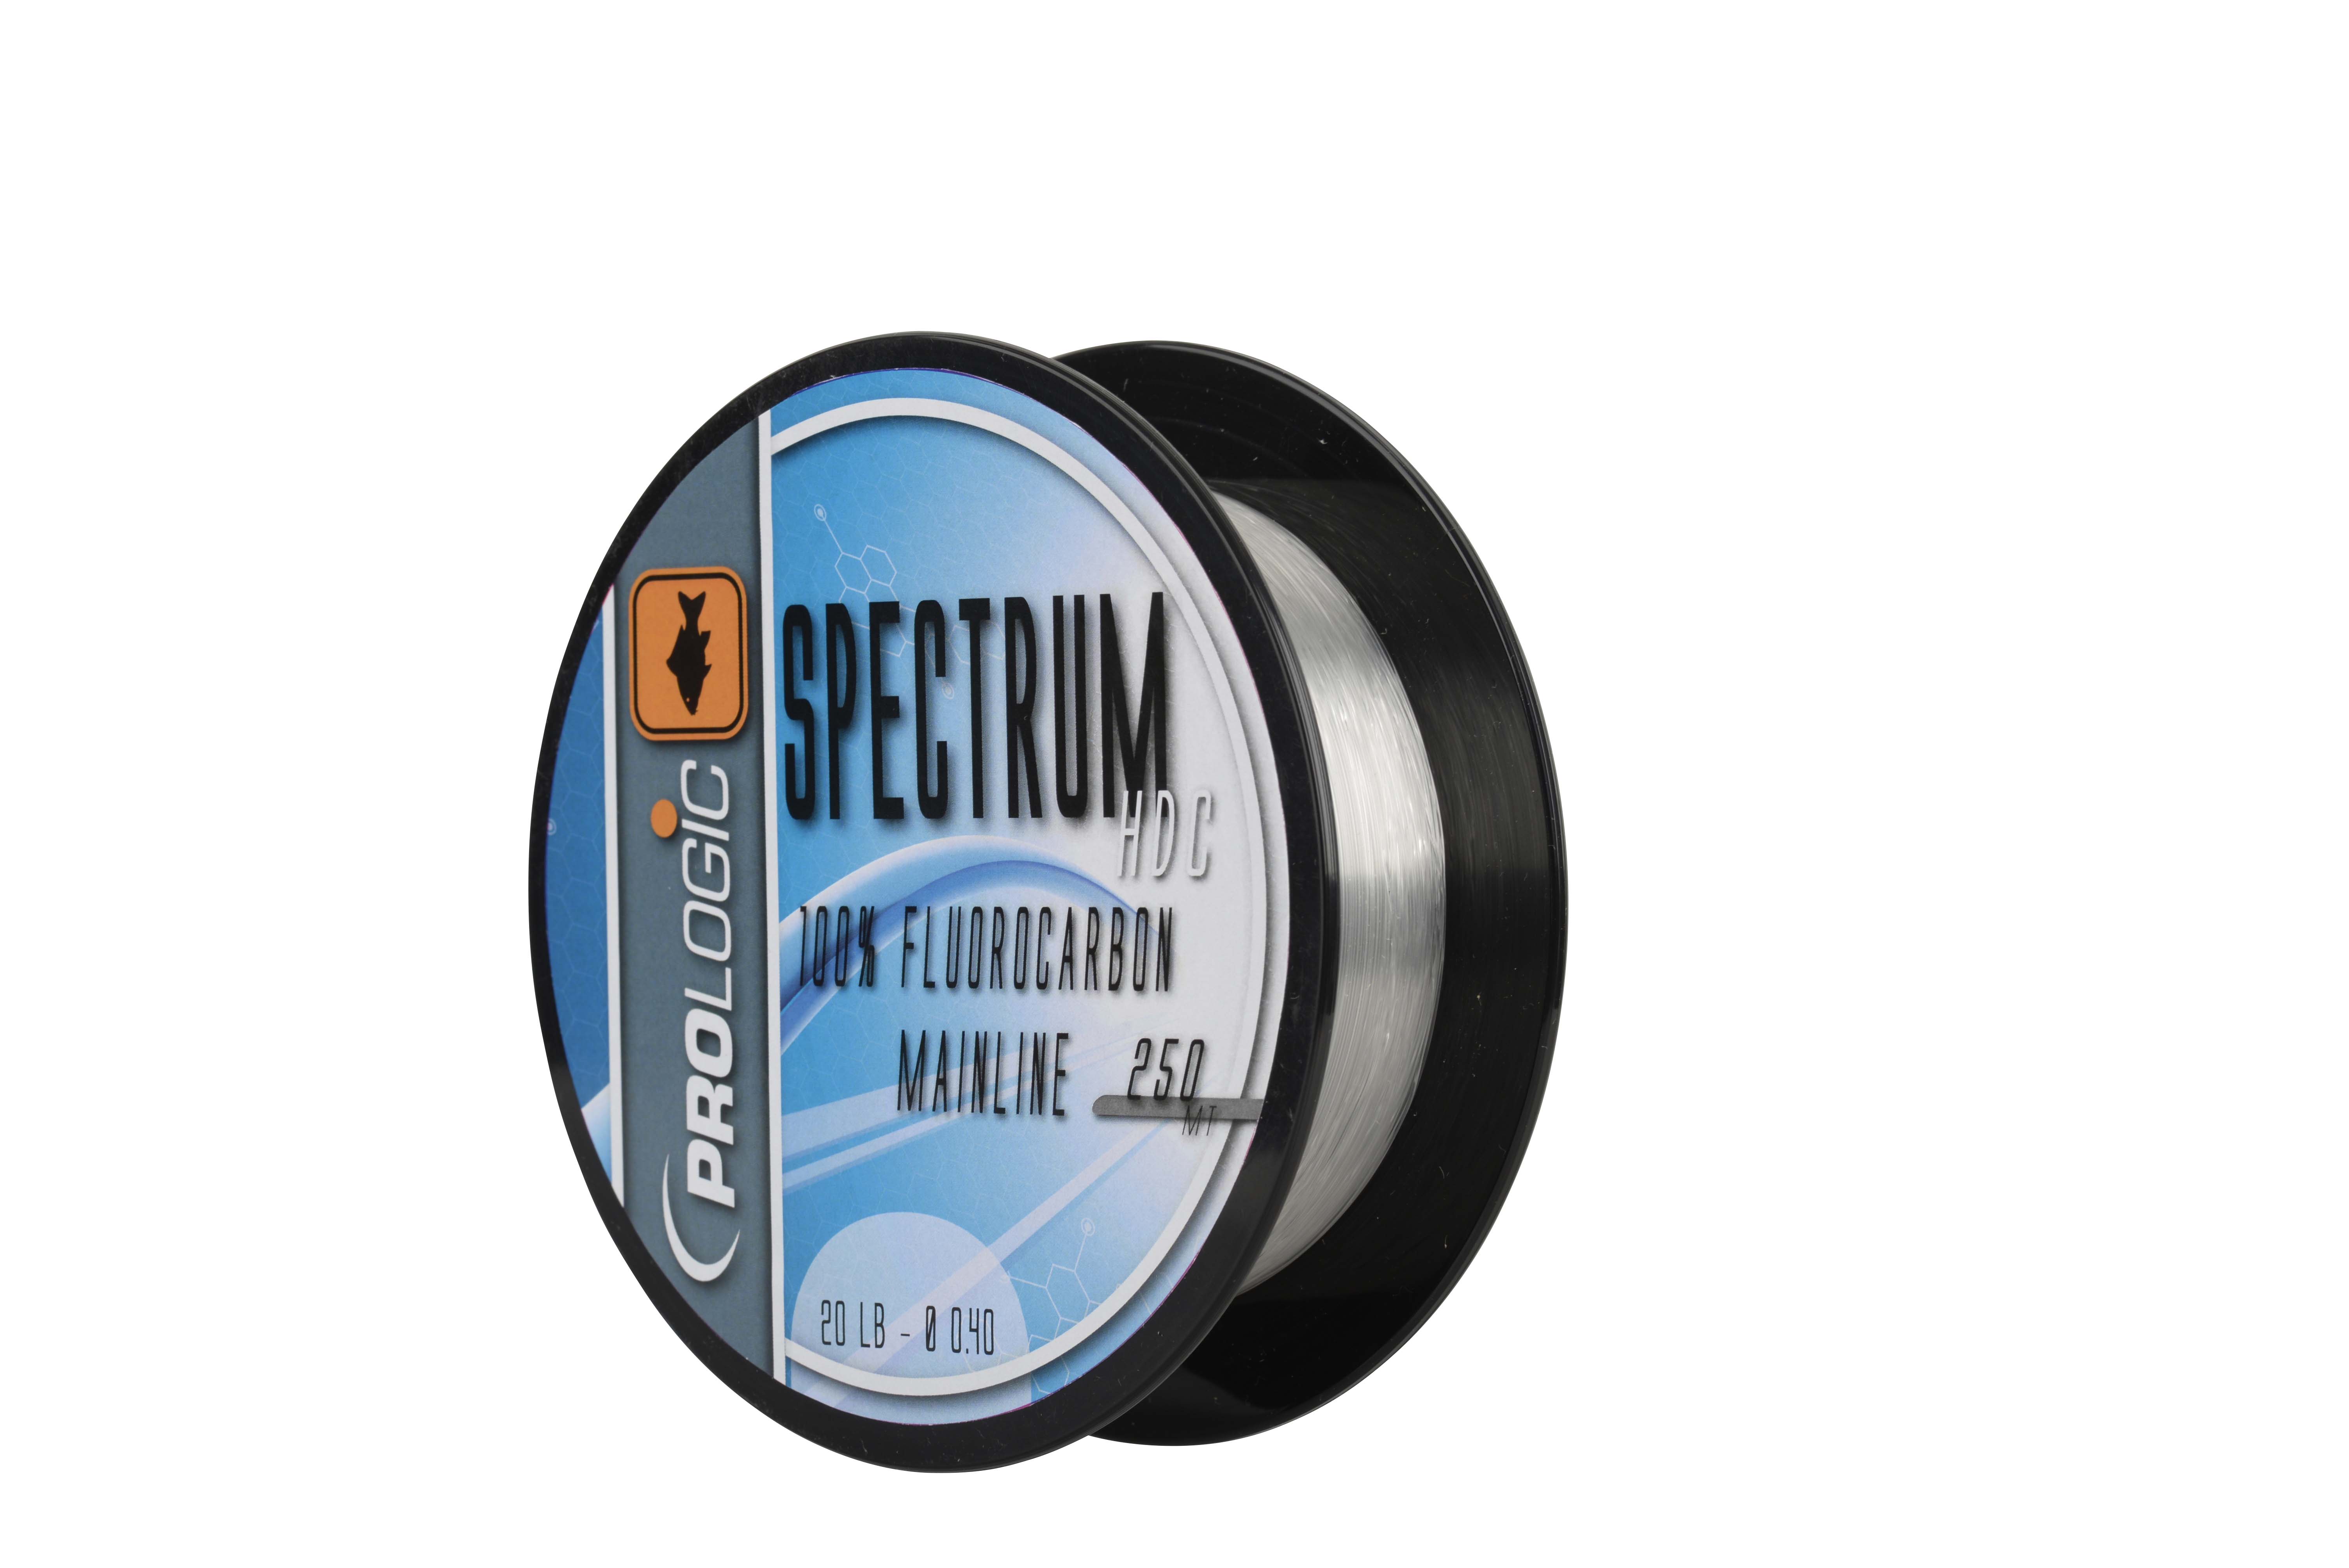 Prologic Spectrum HDC 100% Fluorocarbon Line 250m